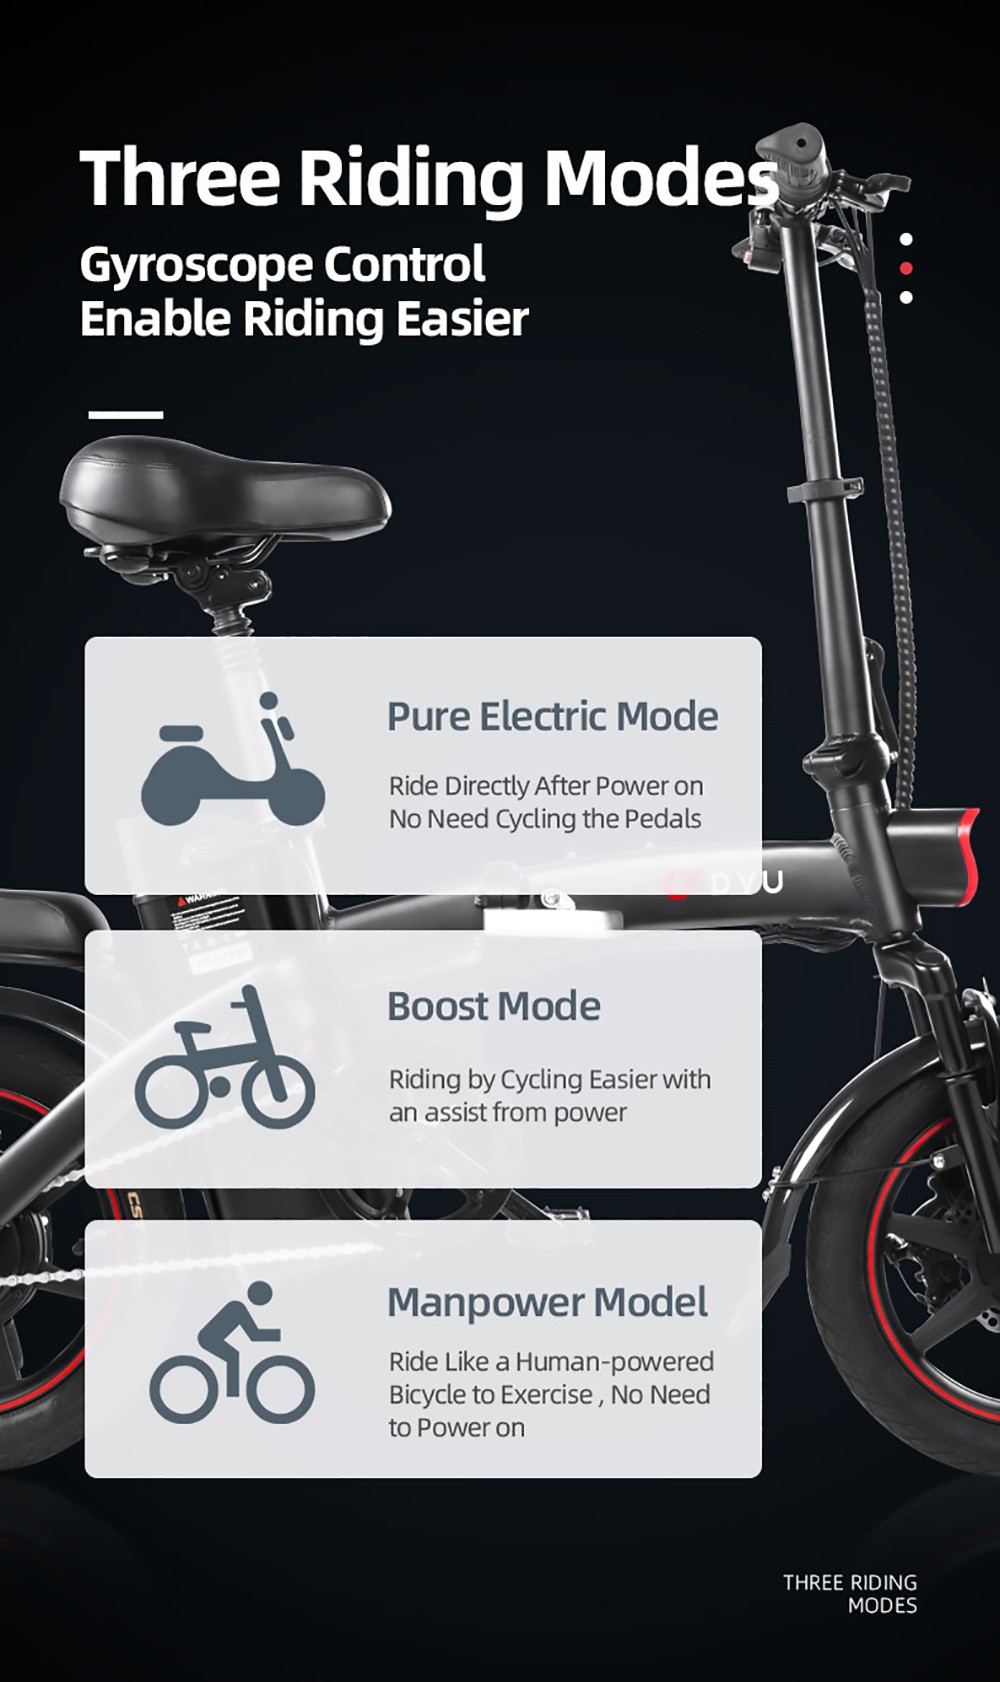 DYU A5 elektromos kerékpár 350 W motor maximális sebesség 25 km/h 36 V 7.5 Ah akkumulátor 70 km maximális hatótáv - fehér